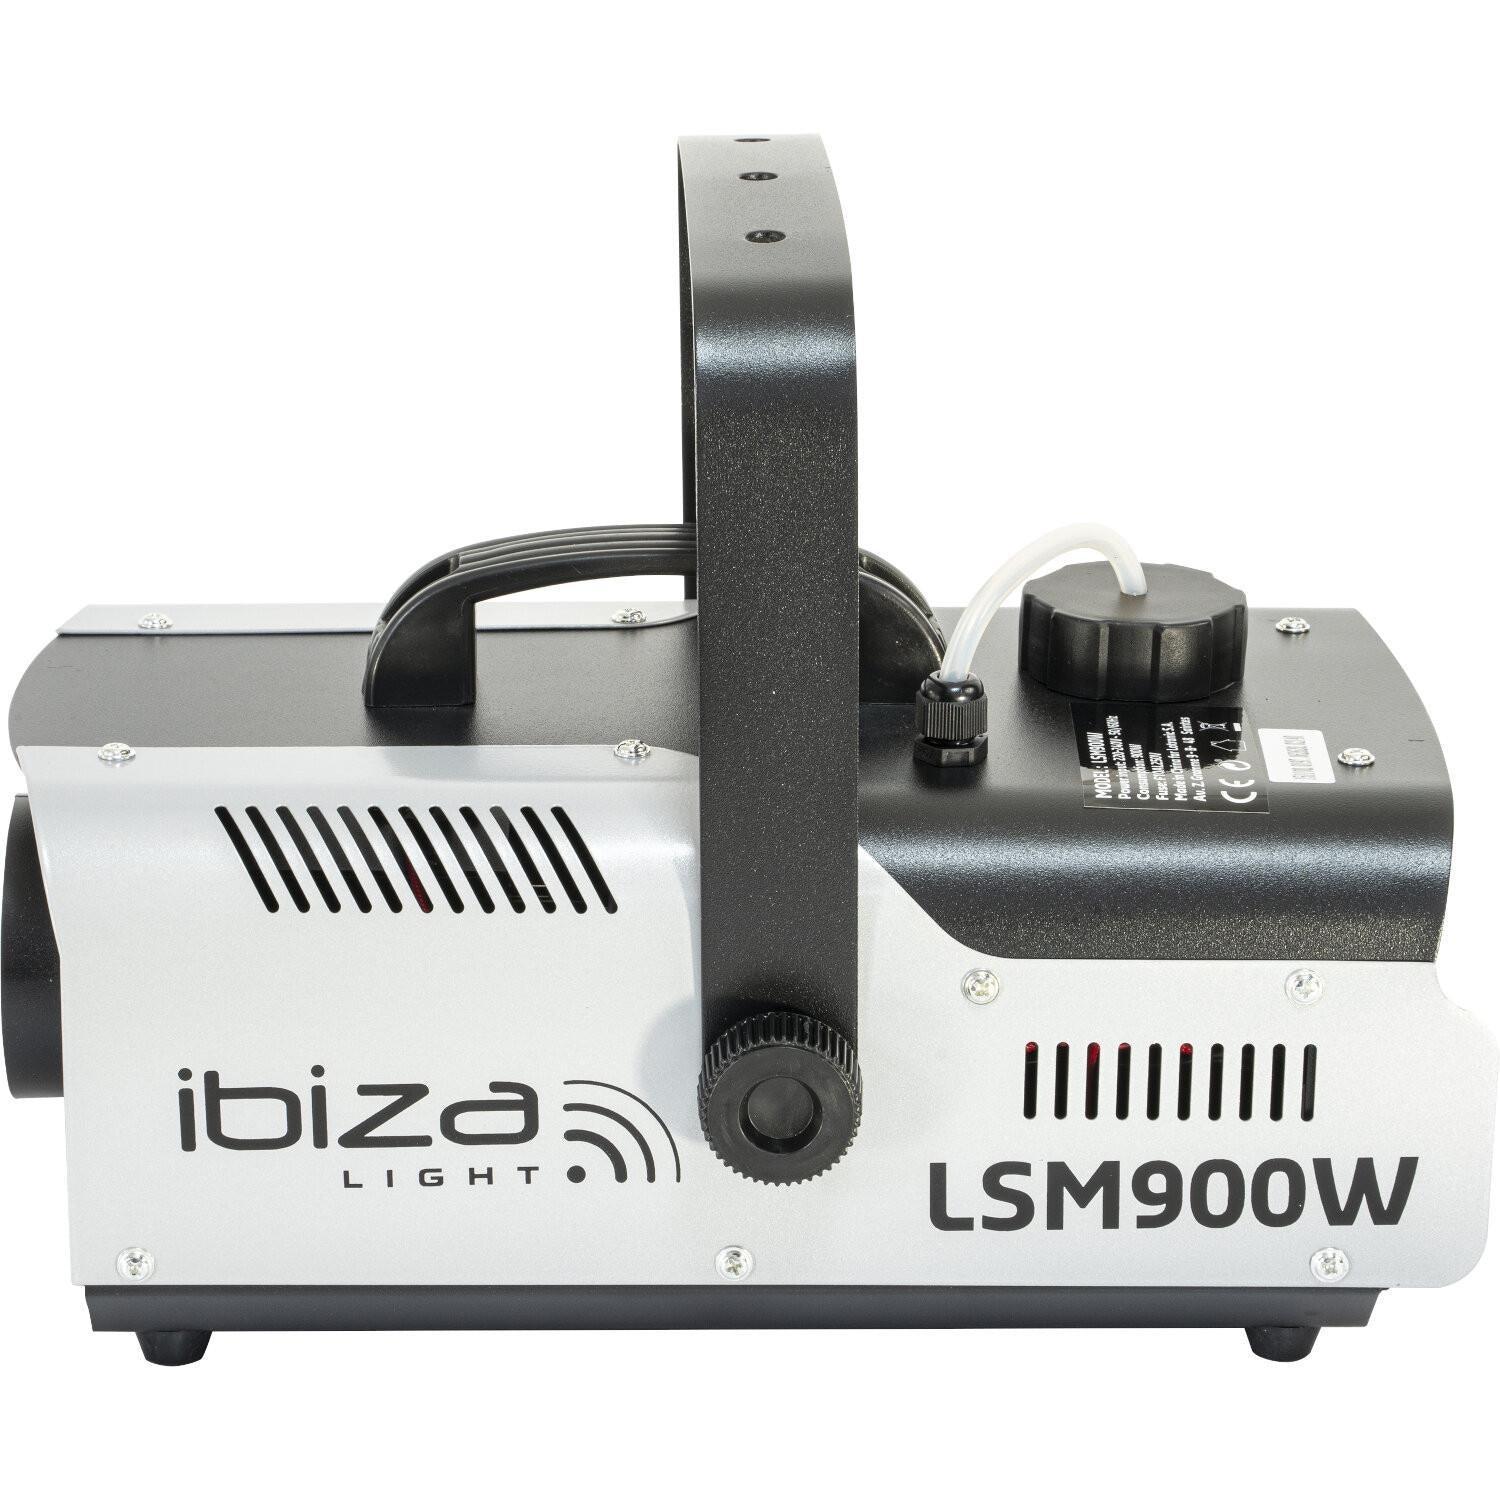 Ibiza Light LSM900W 900w Fog Machine - DY Pro Audio